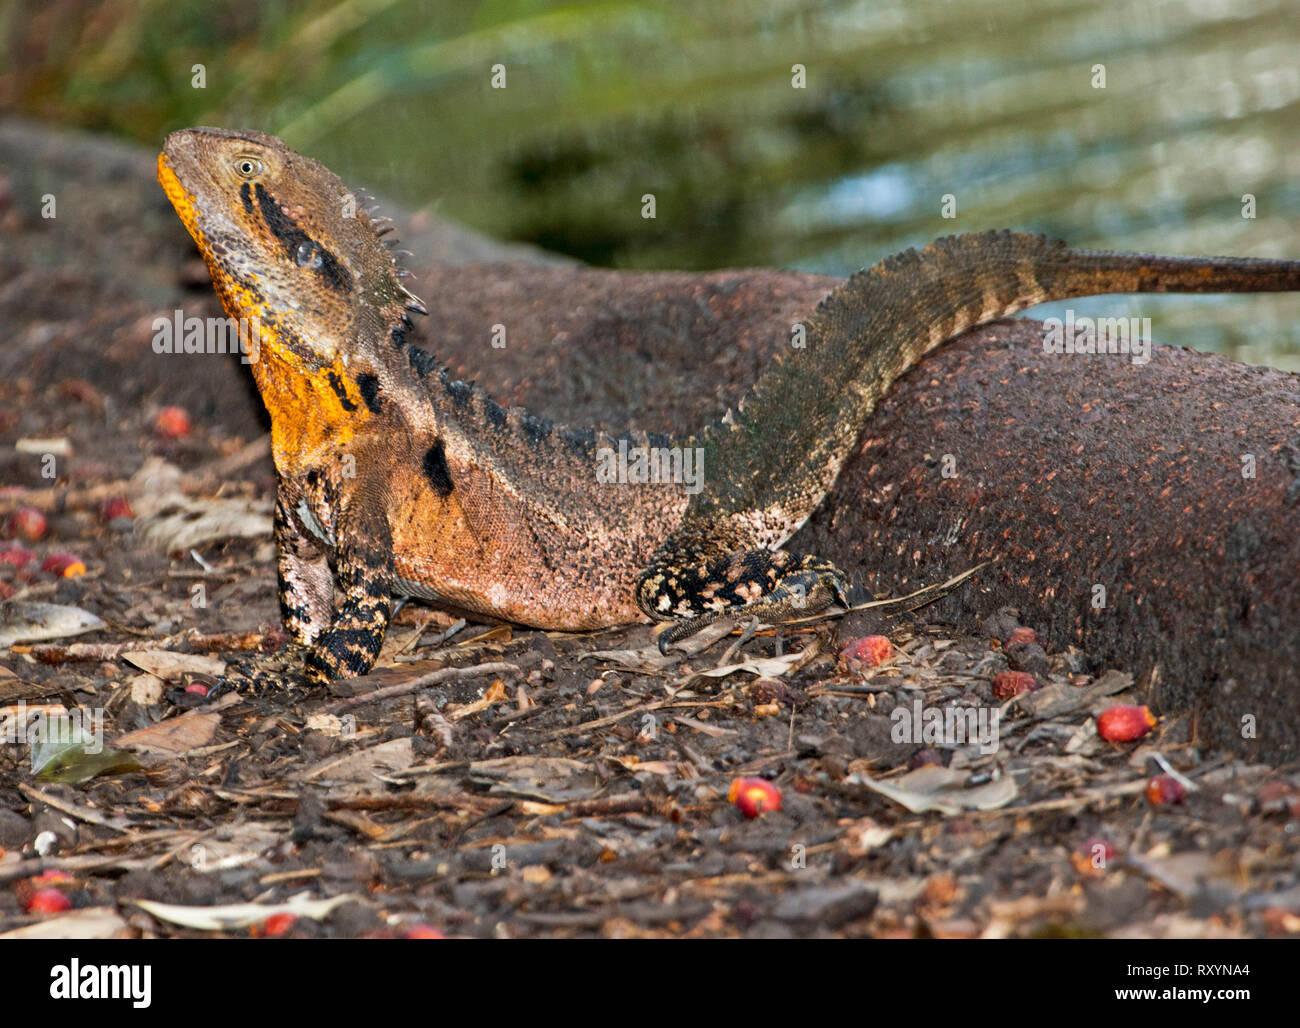 Australia orientale drago acqua, Intellagama lesueurii negli allevamenti di colori vivaci con gola arancione, nel selvaggio Foto Stock